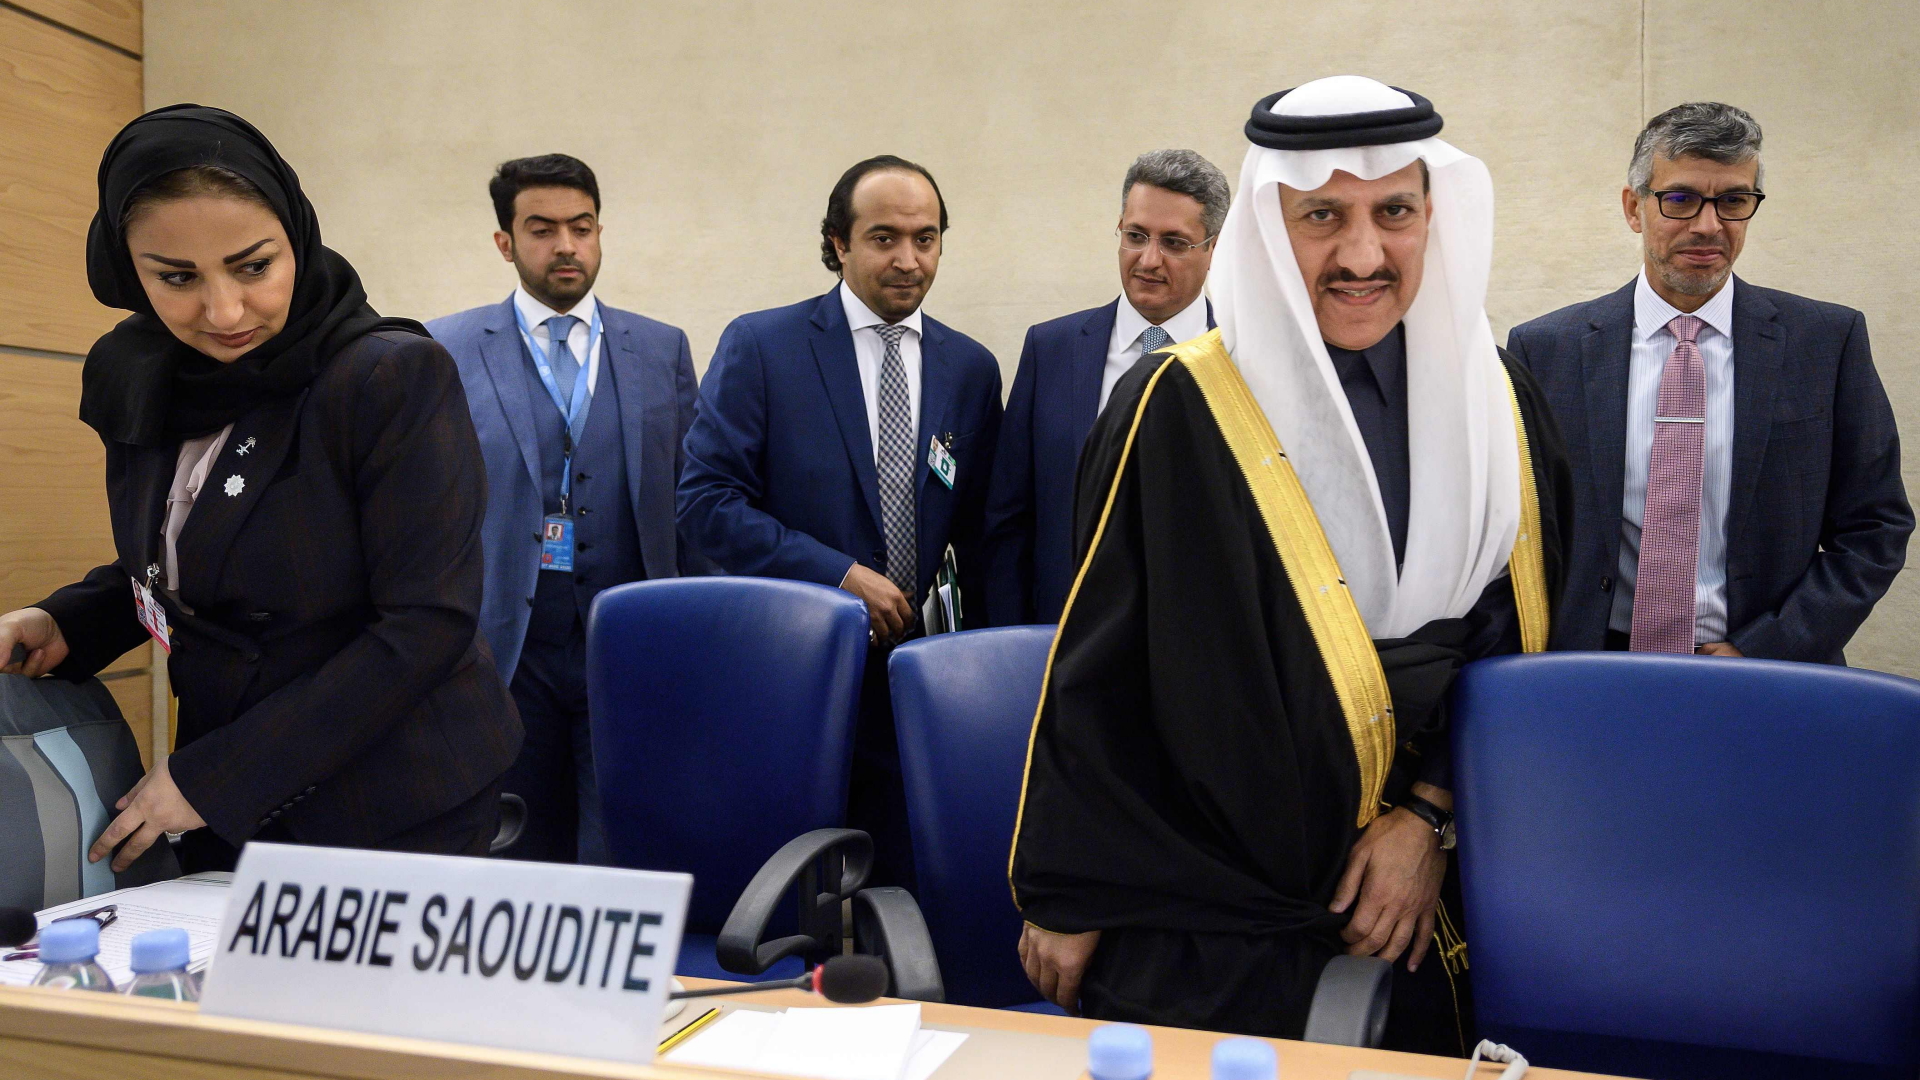 Der saudiarabische Delegationsleiter Bandar al-Aiban (rechts) vor dem UN-Menschenrechtsrat in Genf | Bildquelle: AFP